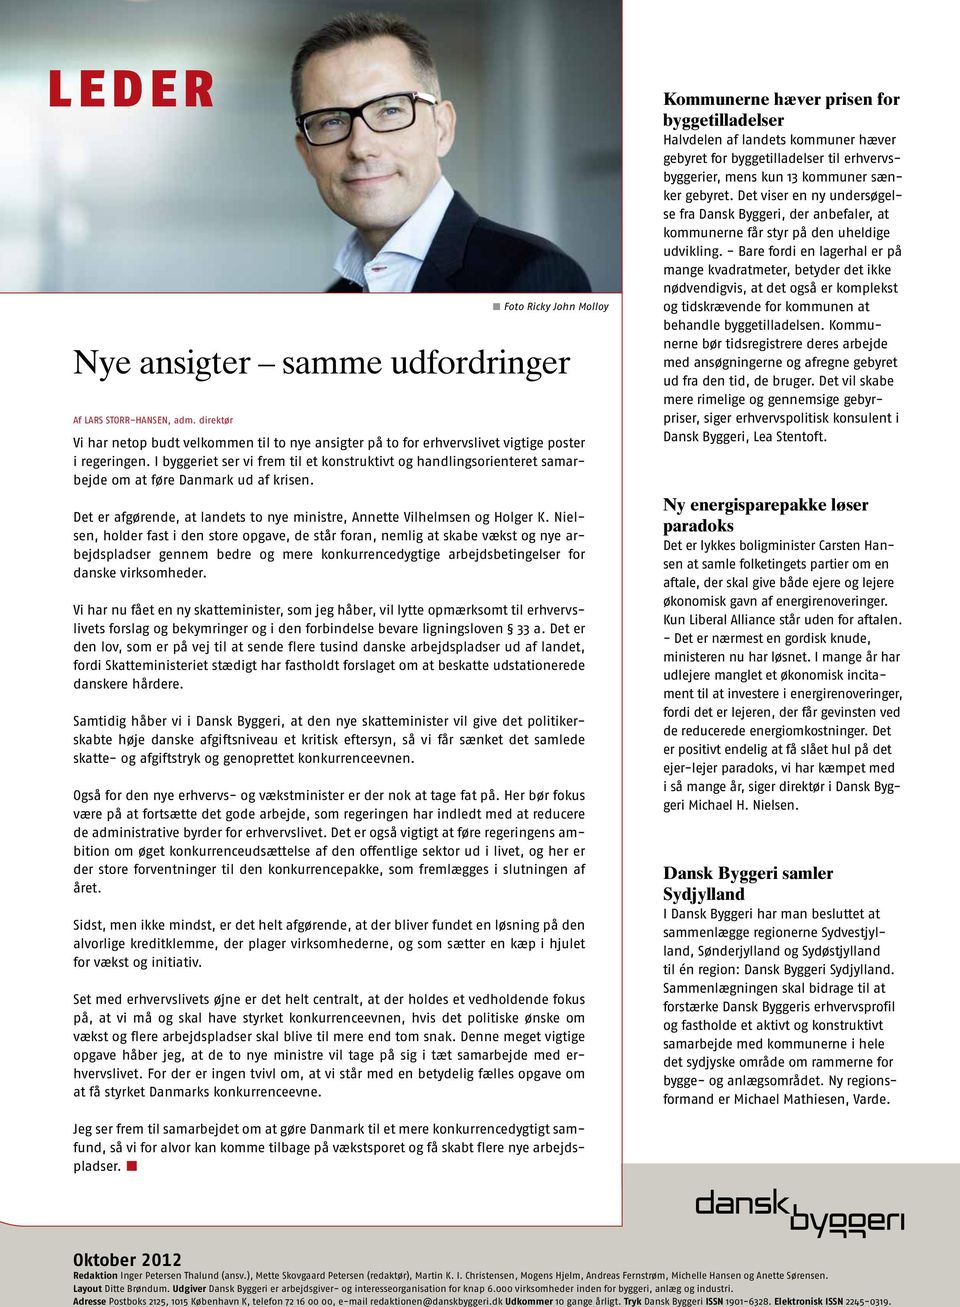 Nielsen, holder fast i den store opgave, de står foran, nemlig at skabe vækst og nye arbejdspladser gennem bedre og mere konkurrencedygtige arbejdsbetingelser for danske virksomheder.